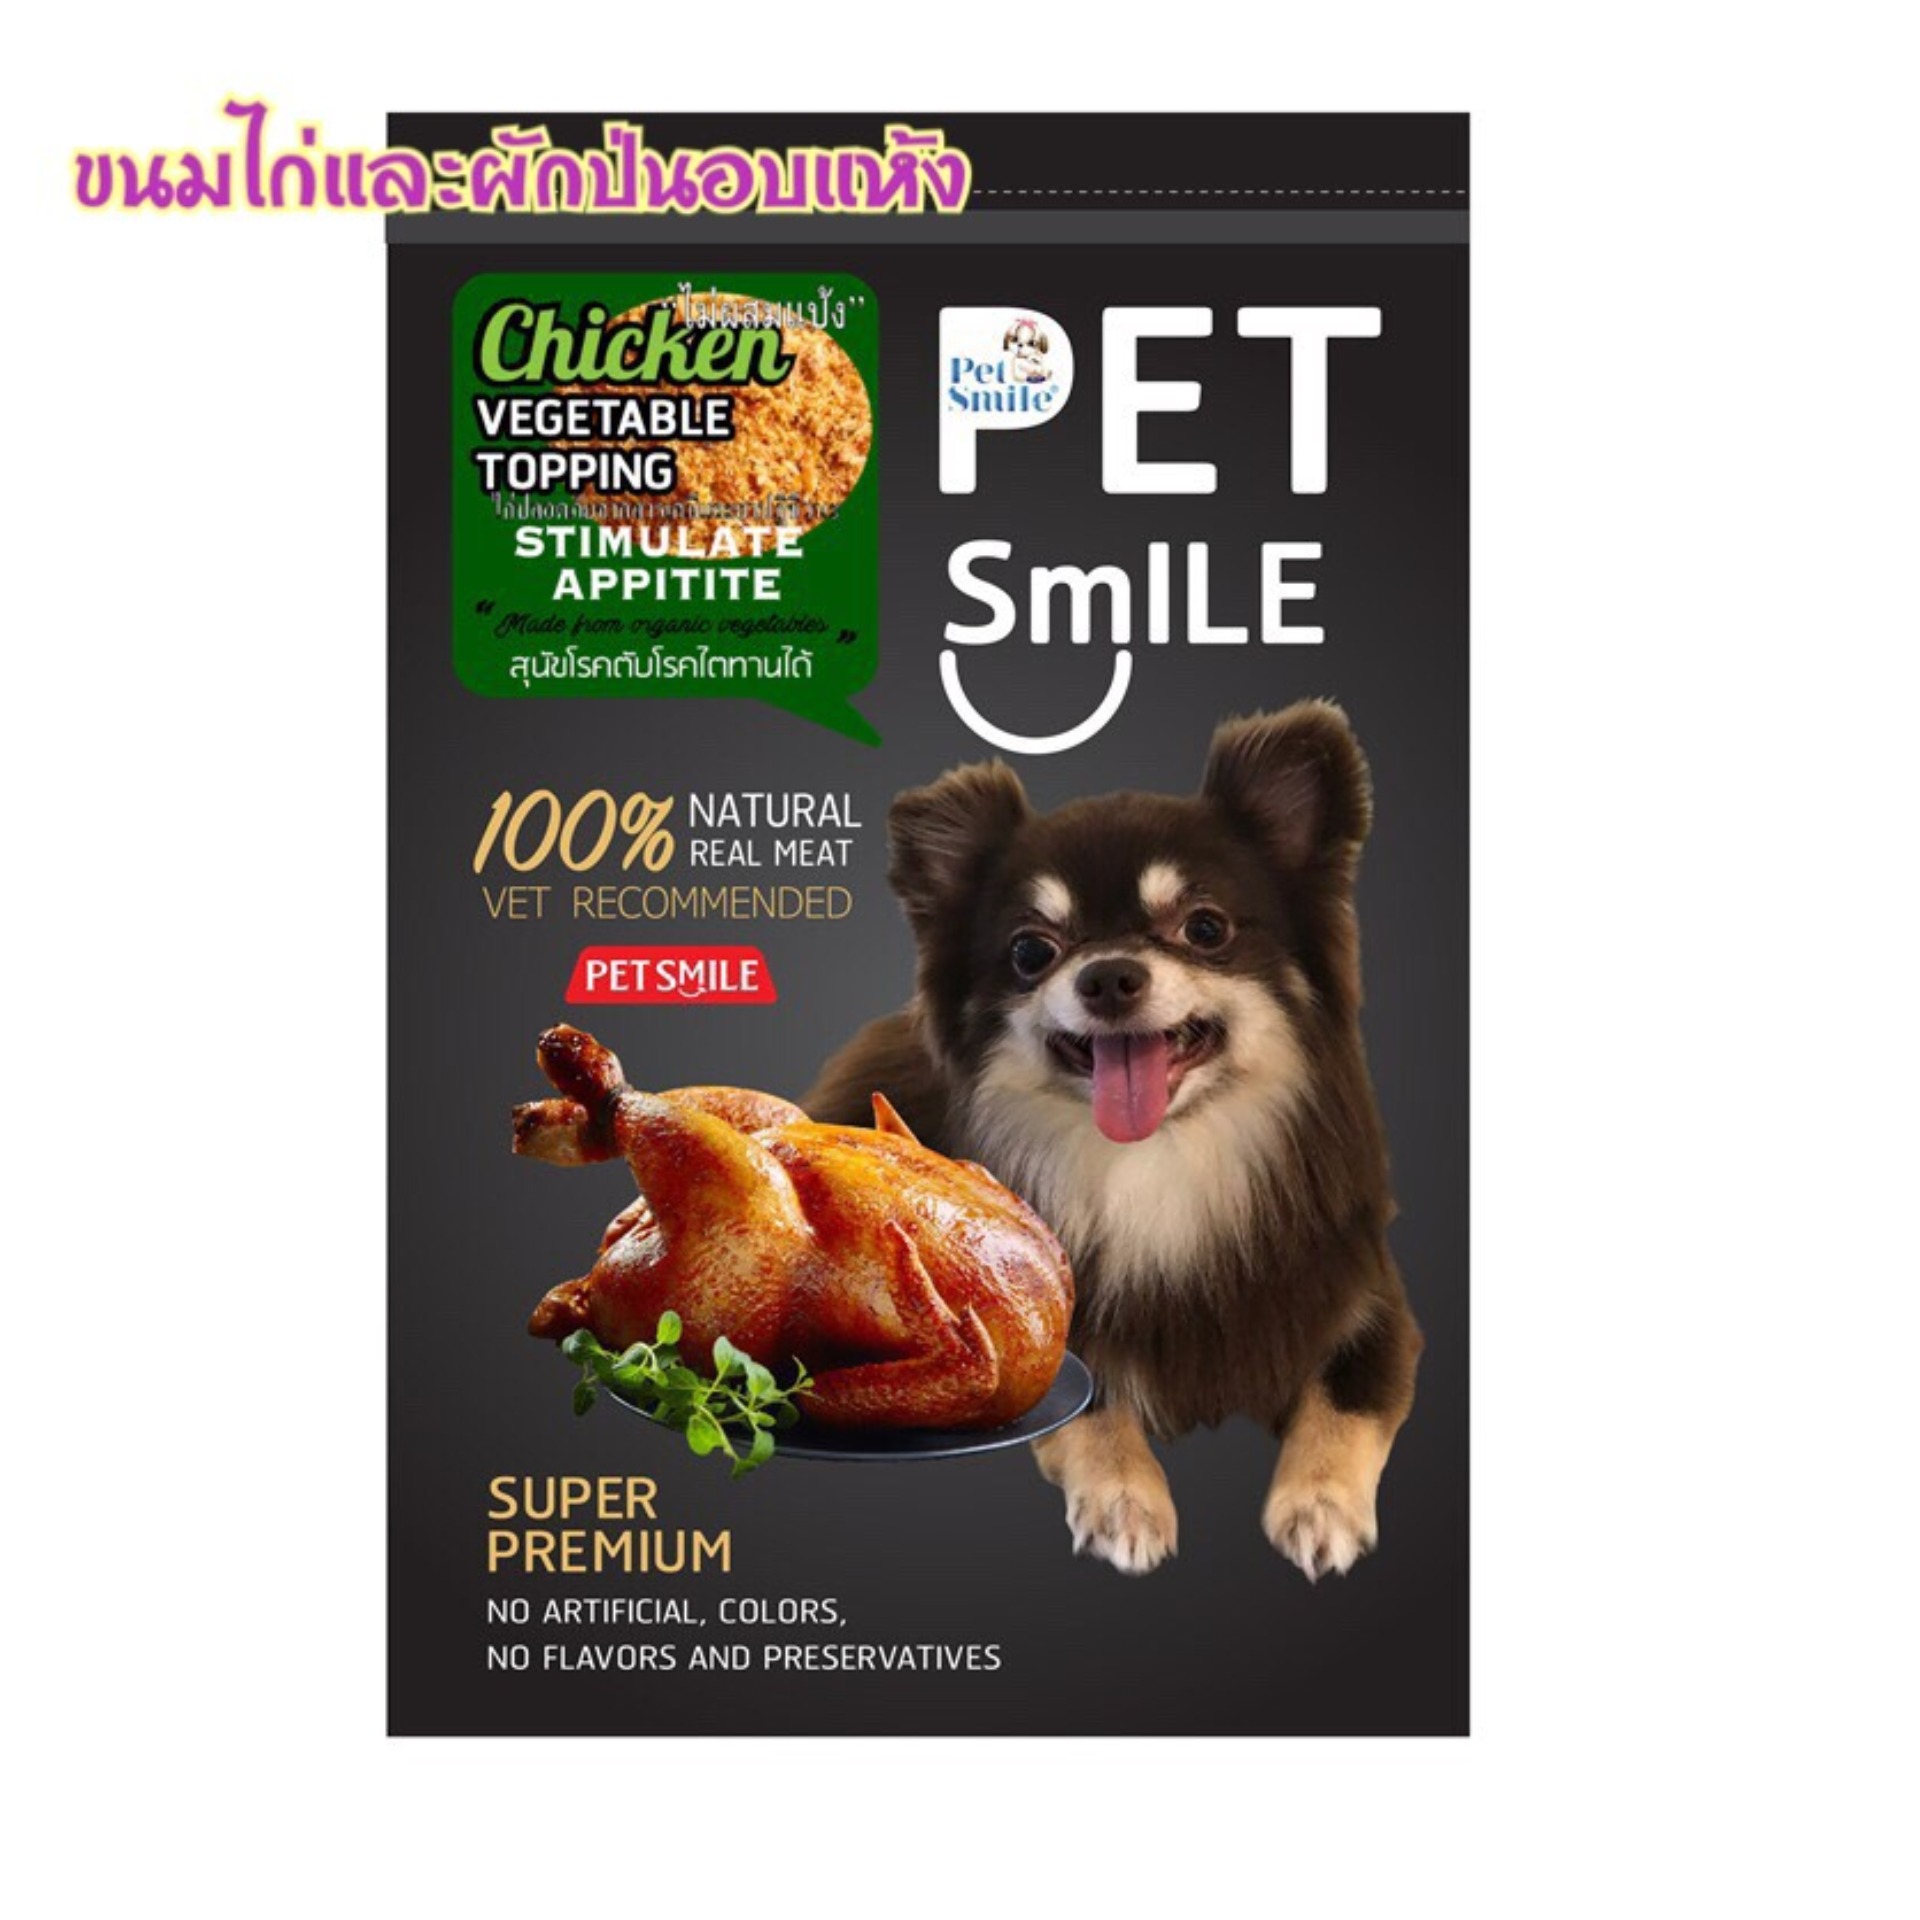 [ เก็บปลายทาง ] ขนมสุนัข ขนมหมา ท็อปปิ้งใส่อาหาร   Pet Smile เนื้อไก่และผักรวมป่น อบแห้ง